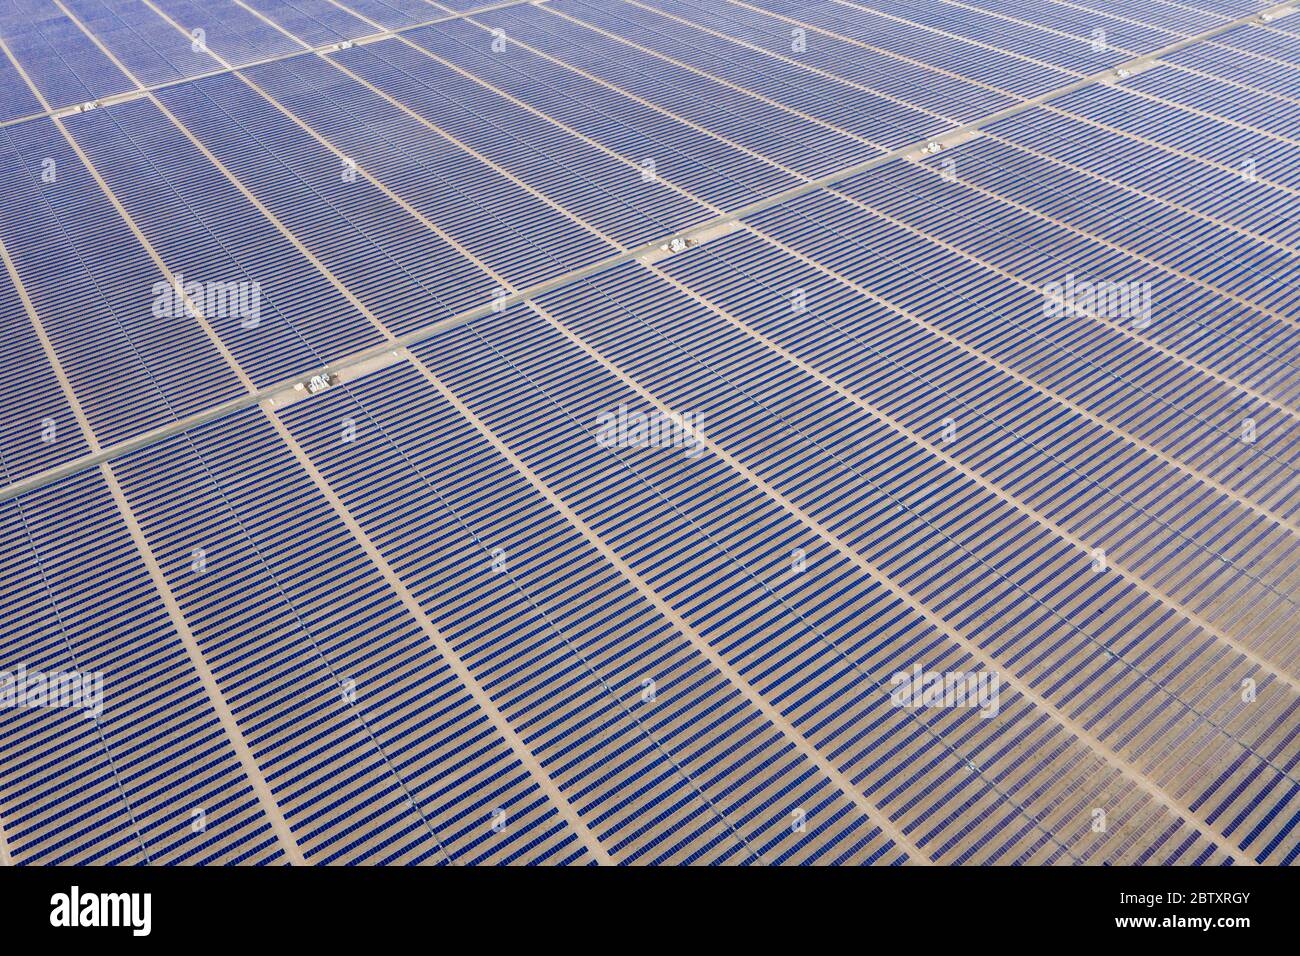 Vue aérienne d'une ferme de panneaux solaires photovoltaïques produisant une énergie renouvelable durable dans une centrale électrique désertique. Banque D'Images